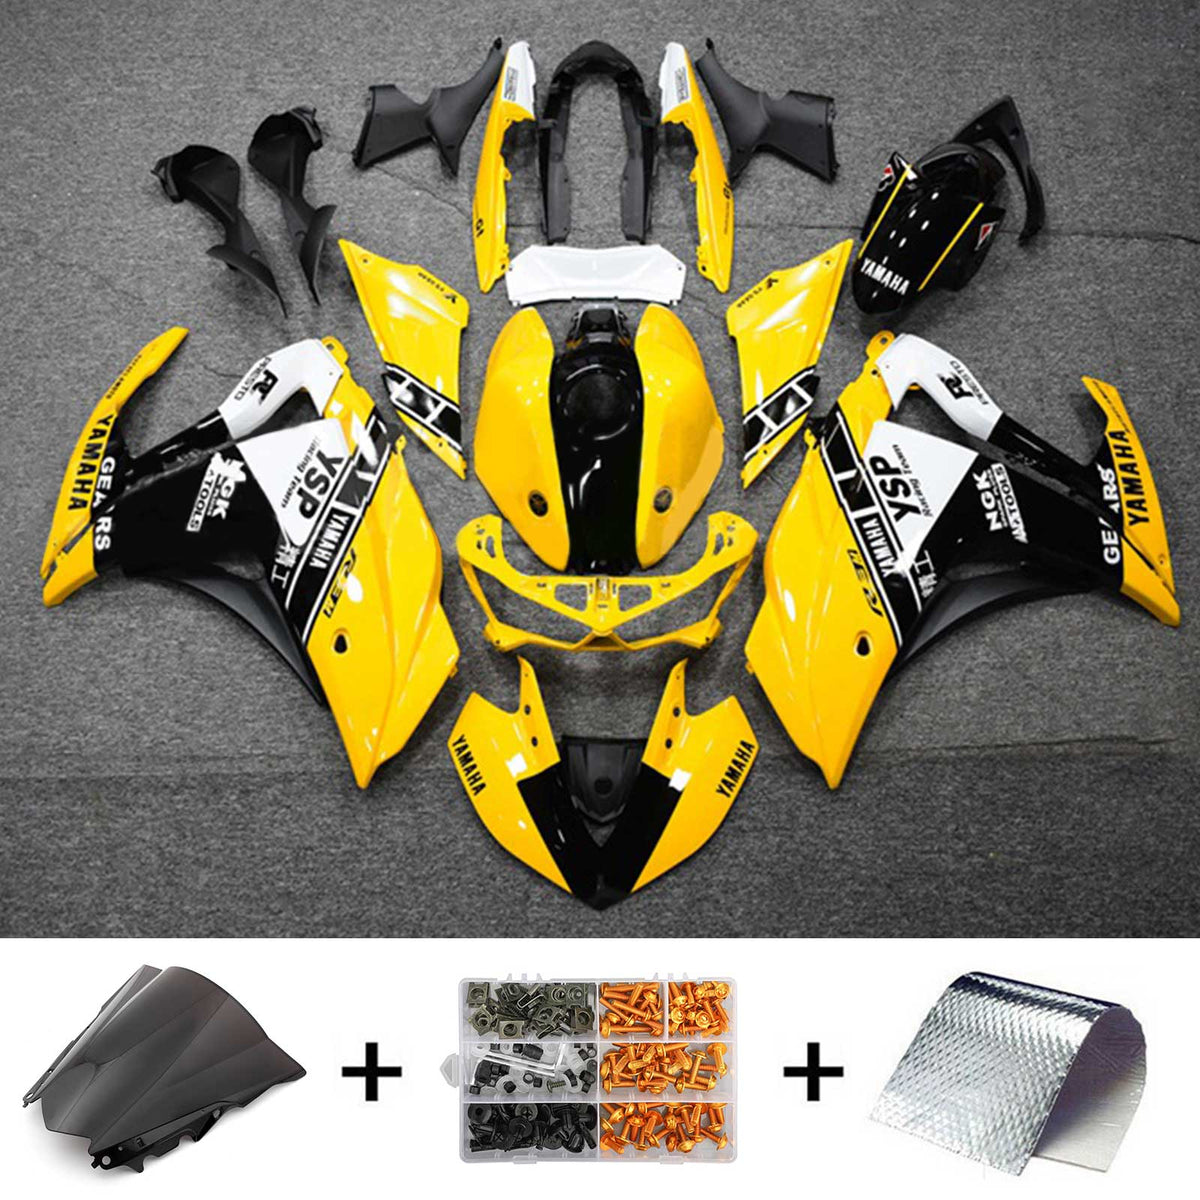 Kit carena Amotopart Yamaha 2014-2018 YZF R3 e 2015-2017 YZF R25 Kit carena giallo nero